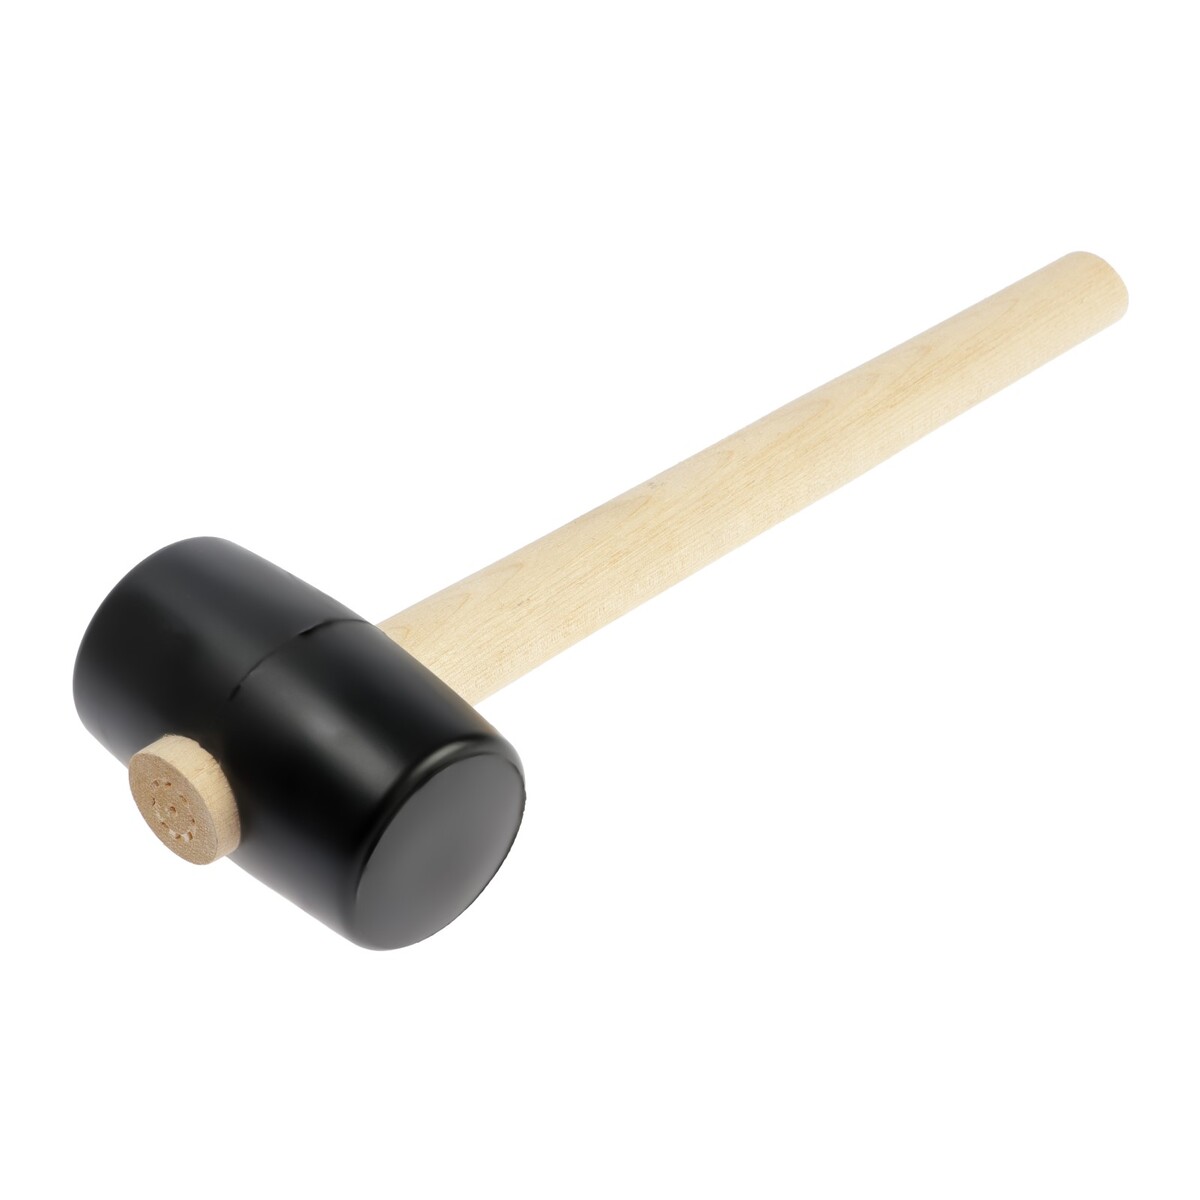 Киянка лом, деревянная рукоятка, черная резина, 55 мм, 300 г киянка лом деревянная рукоятка черная резина 45 мм 200 г